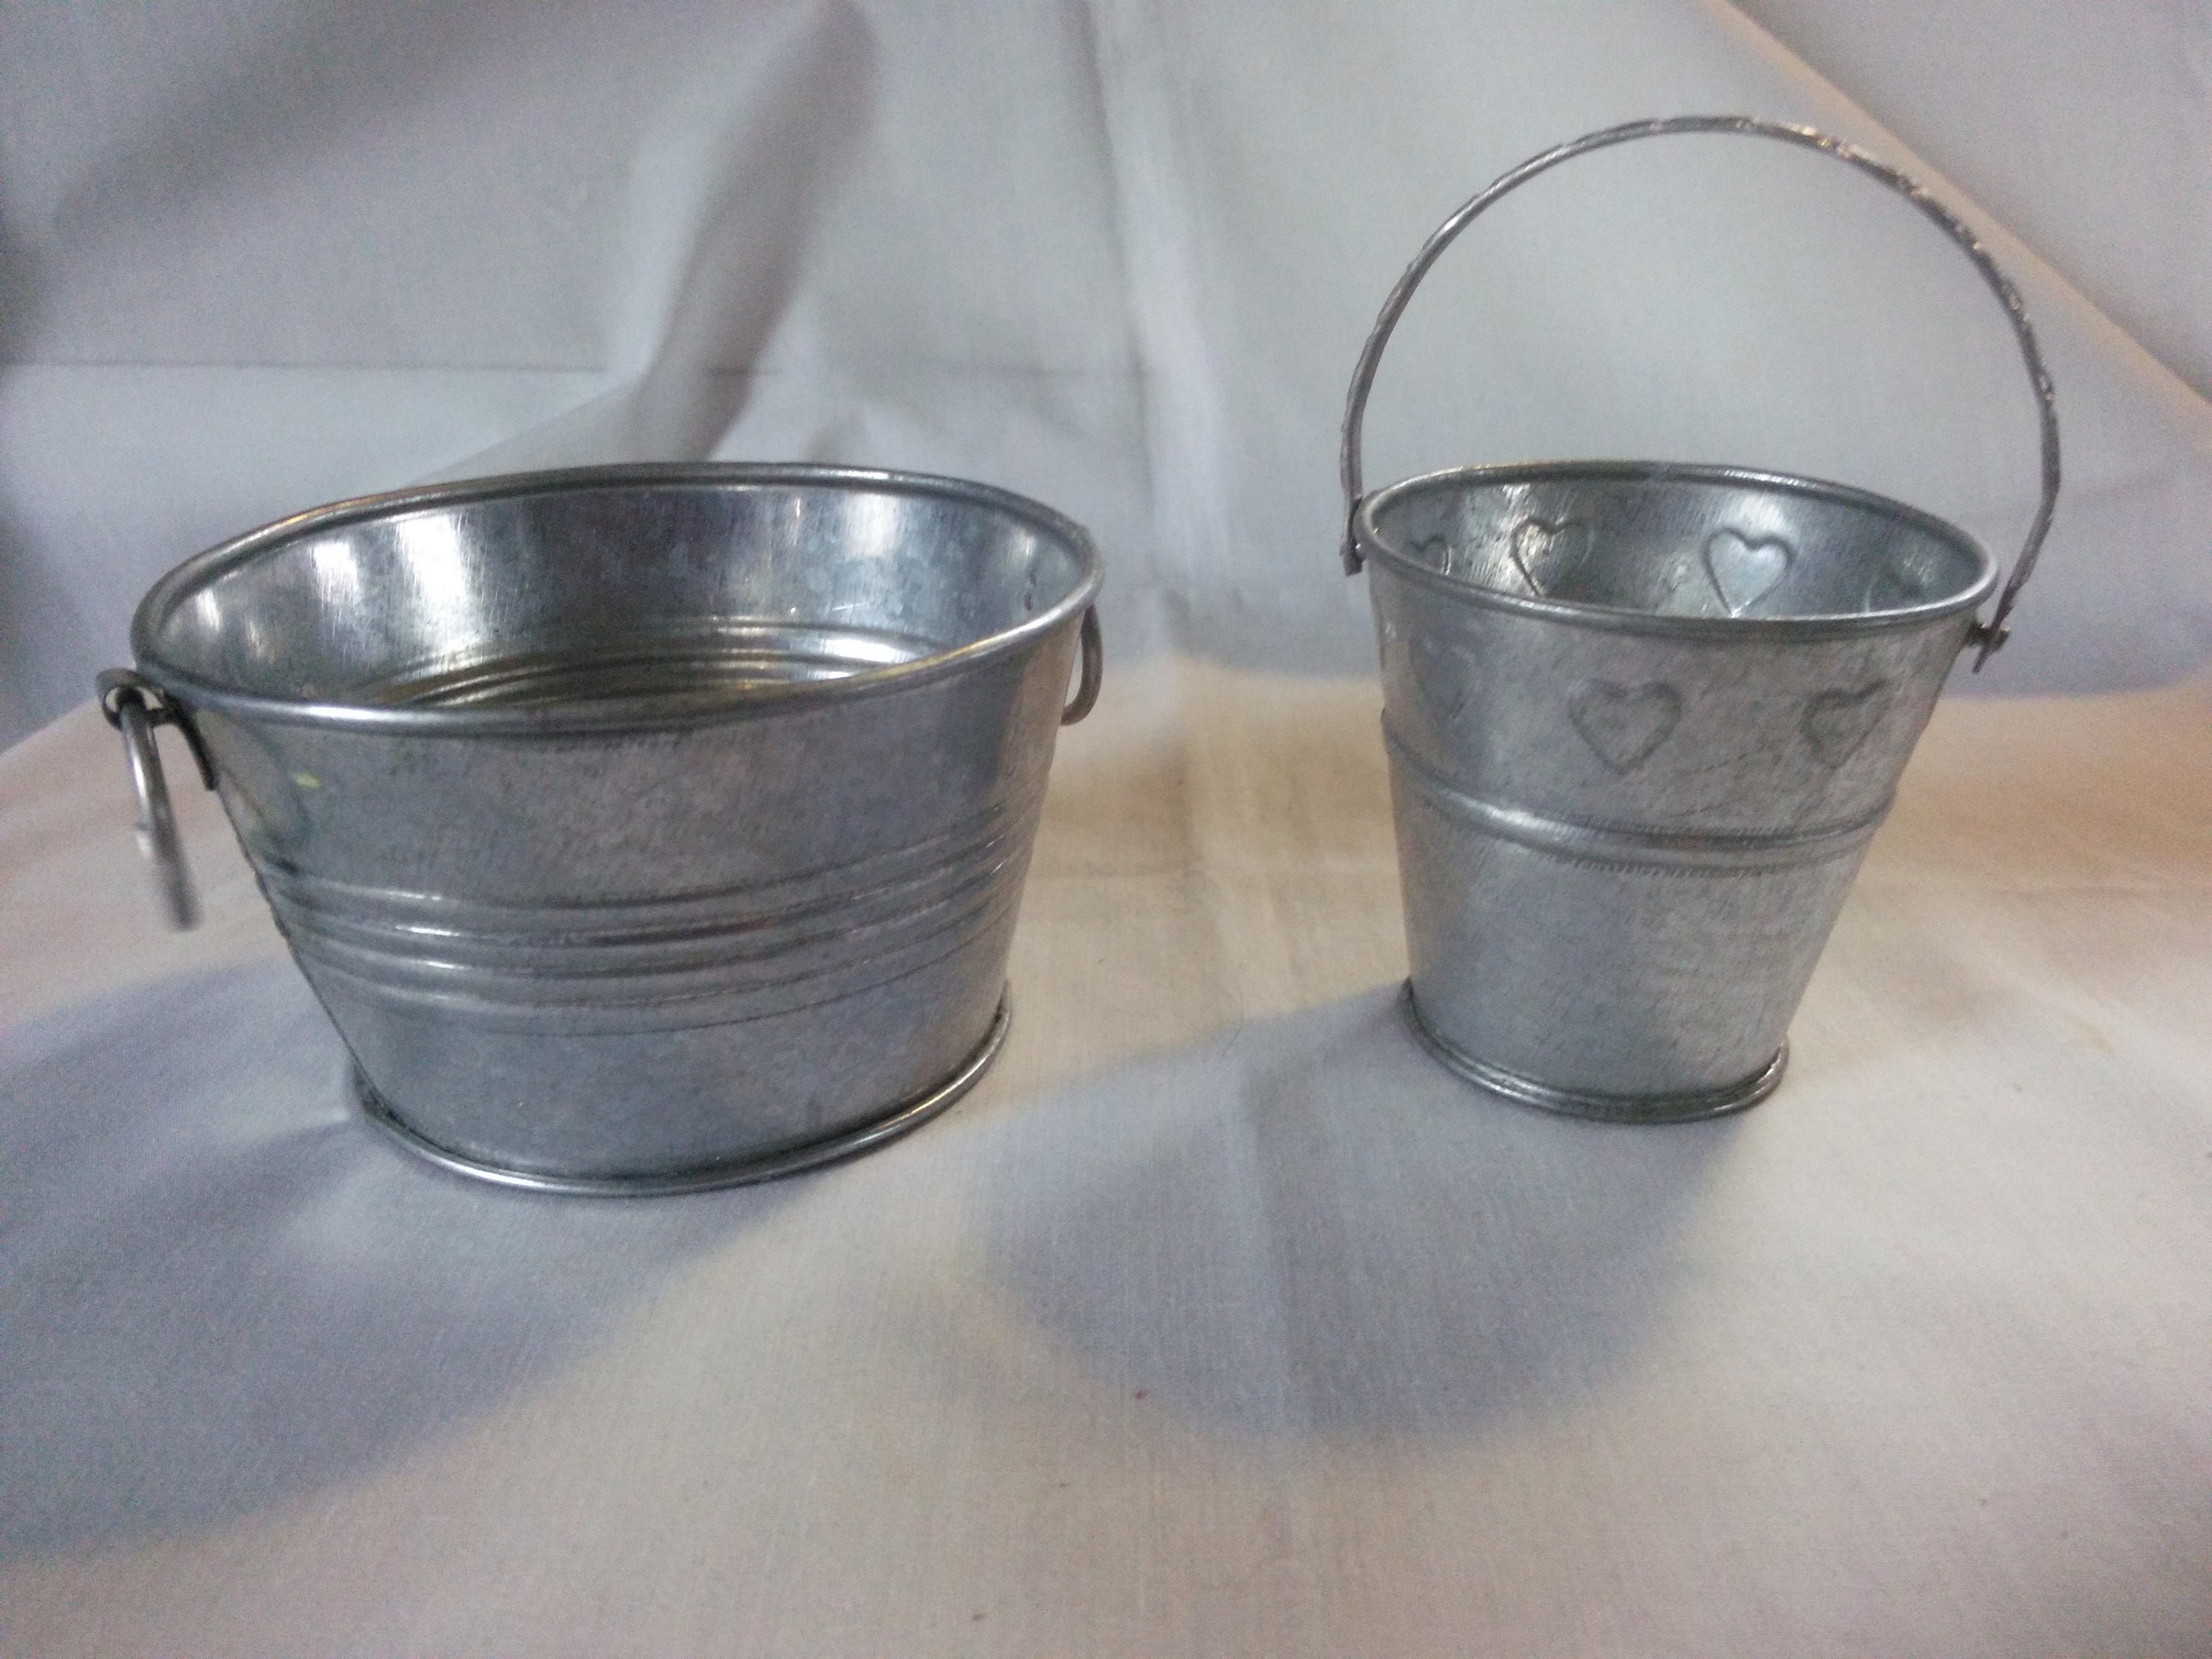 Mini Small Metal Buckets